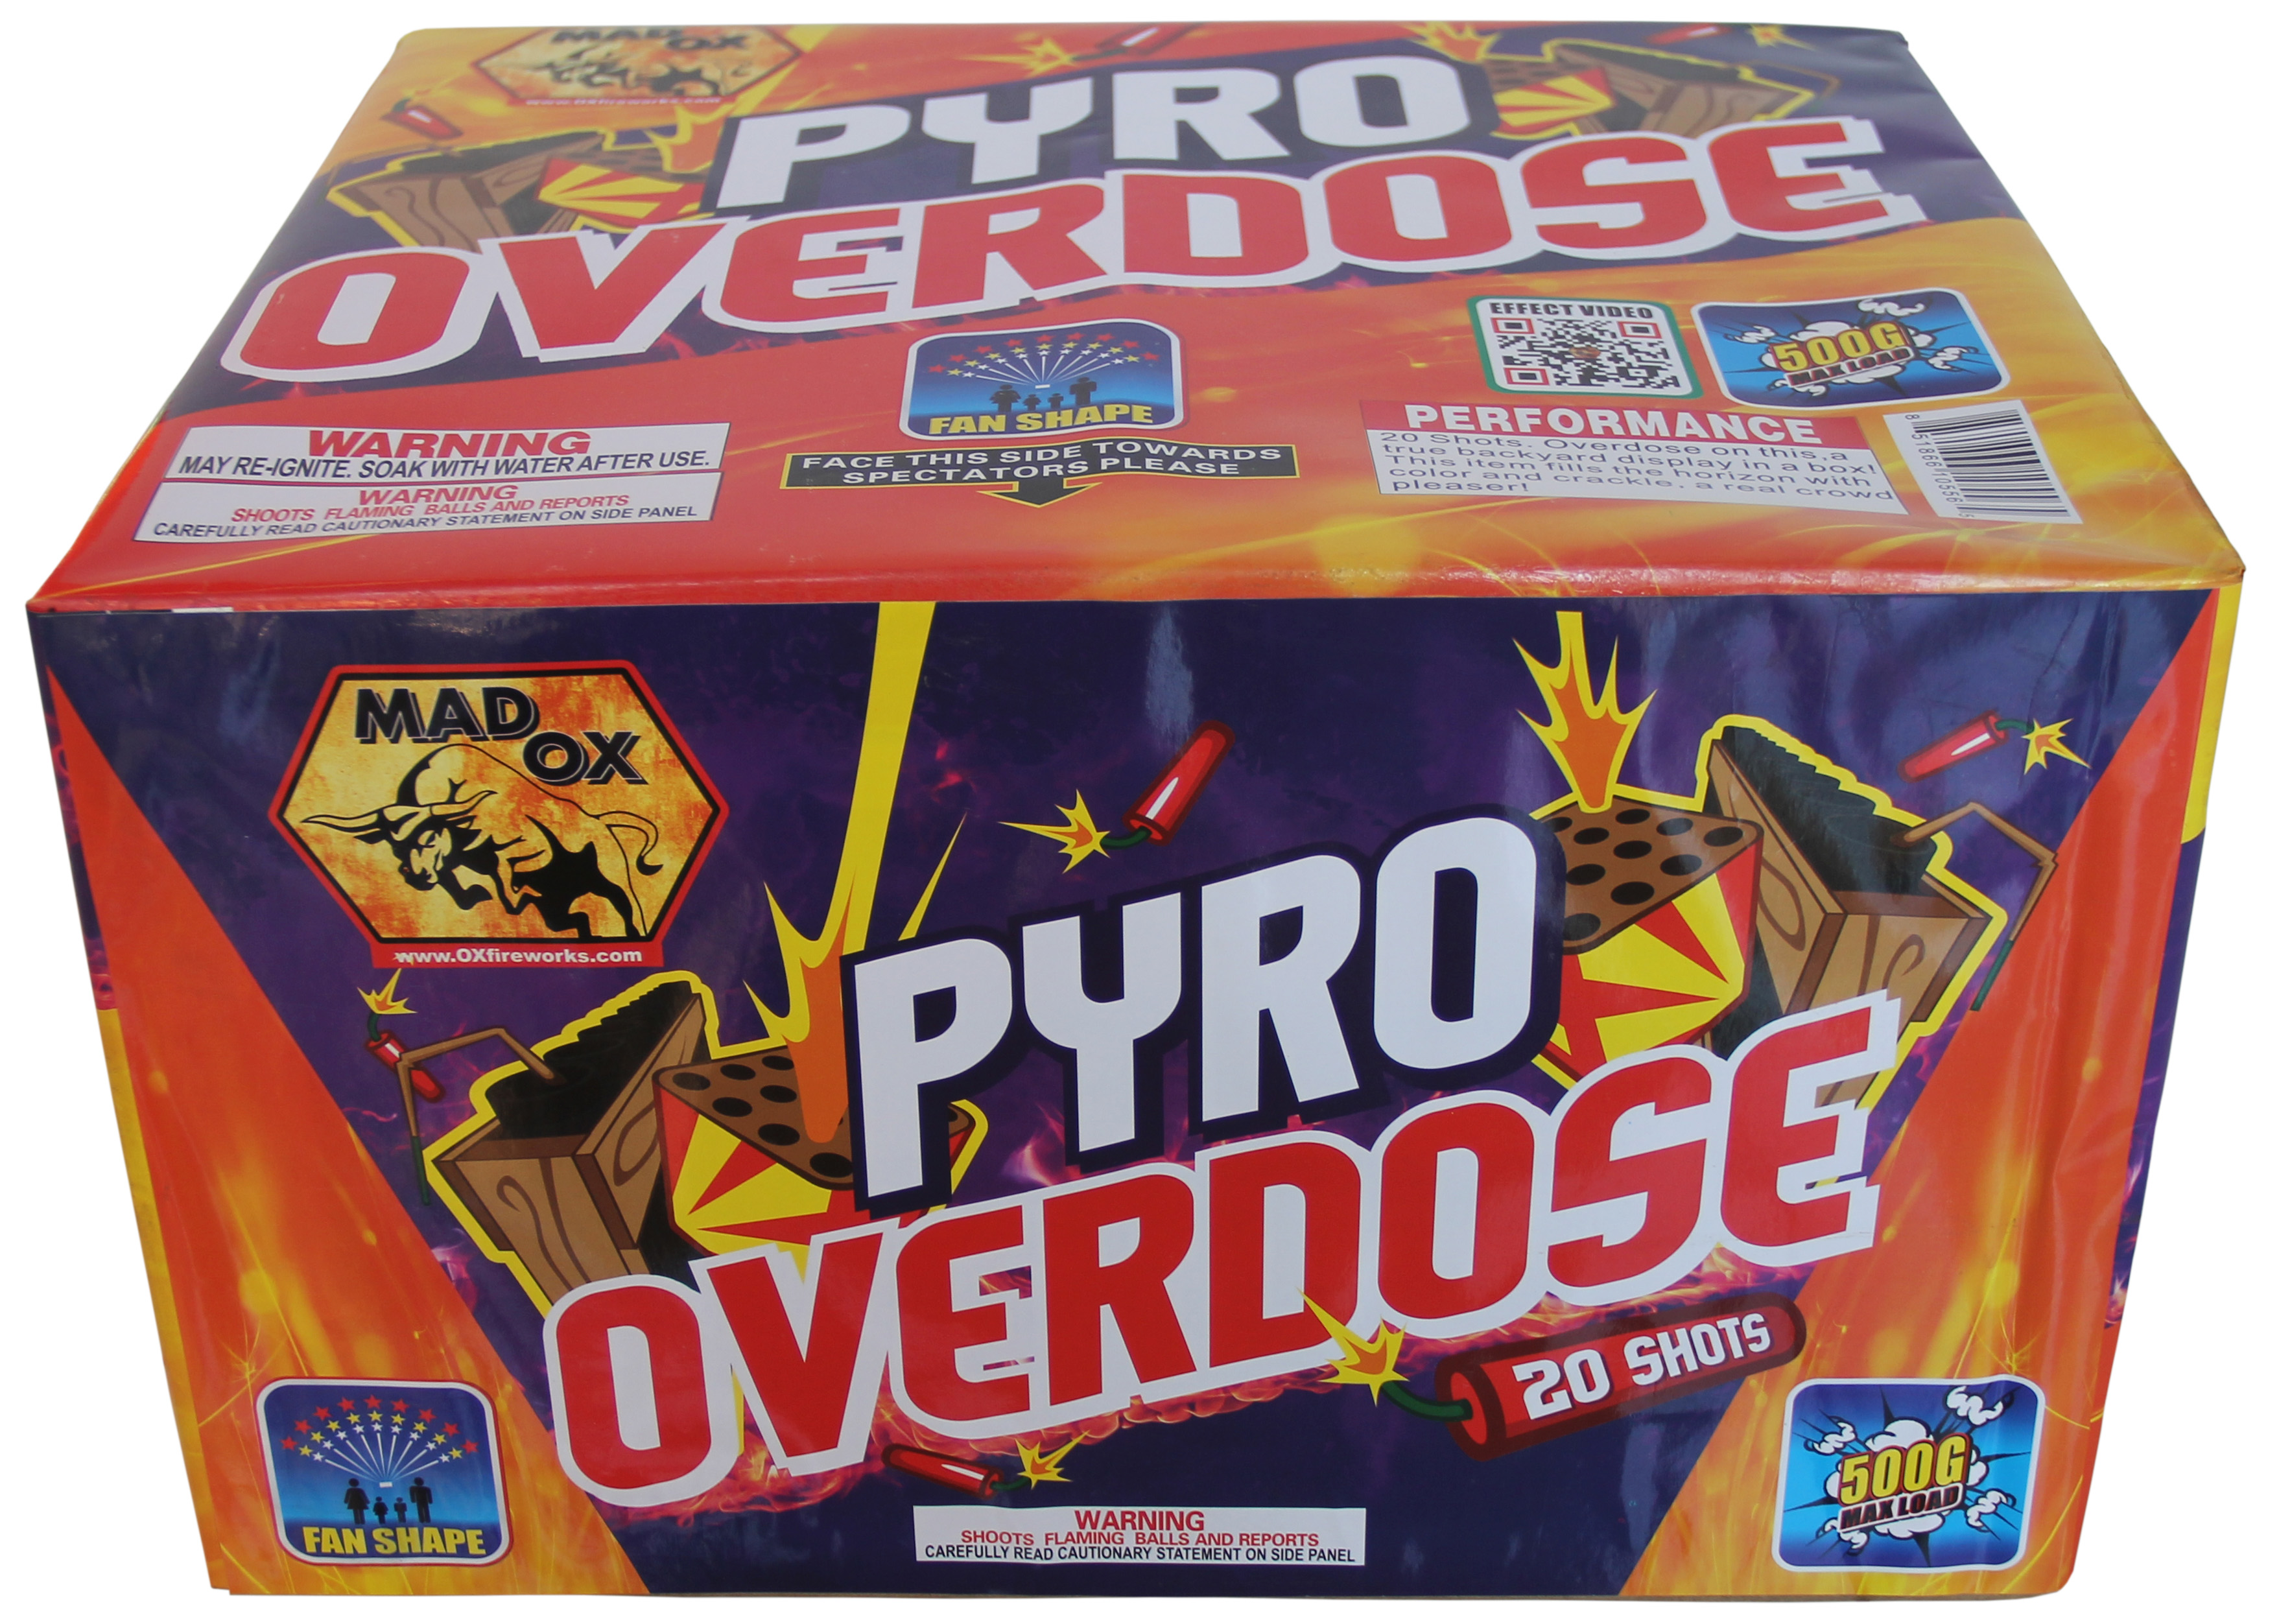 Pyro Overdose